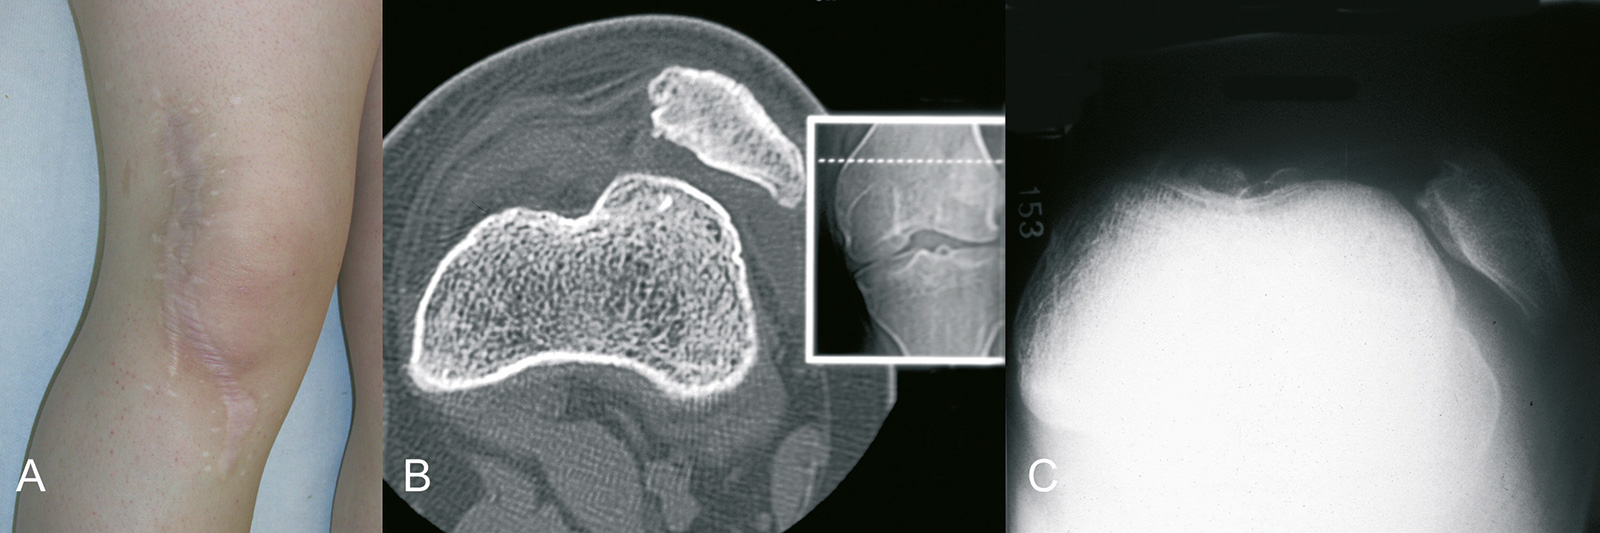 Abb. 4-30: Knie eines 15-jährigen Mädchens nach mehrfacher Operation (A), und einem Rezidiv der Patellaluxation (B-C)